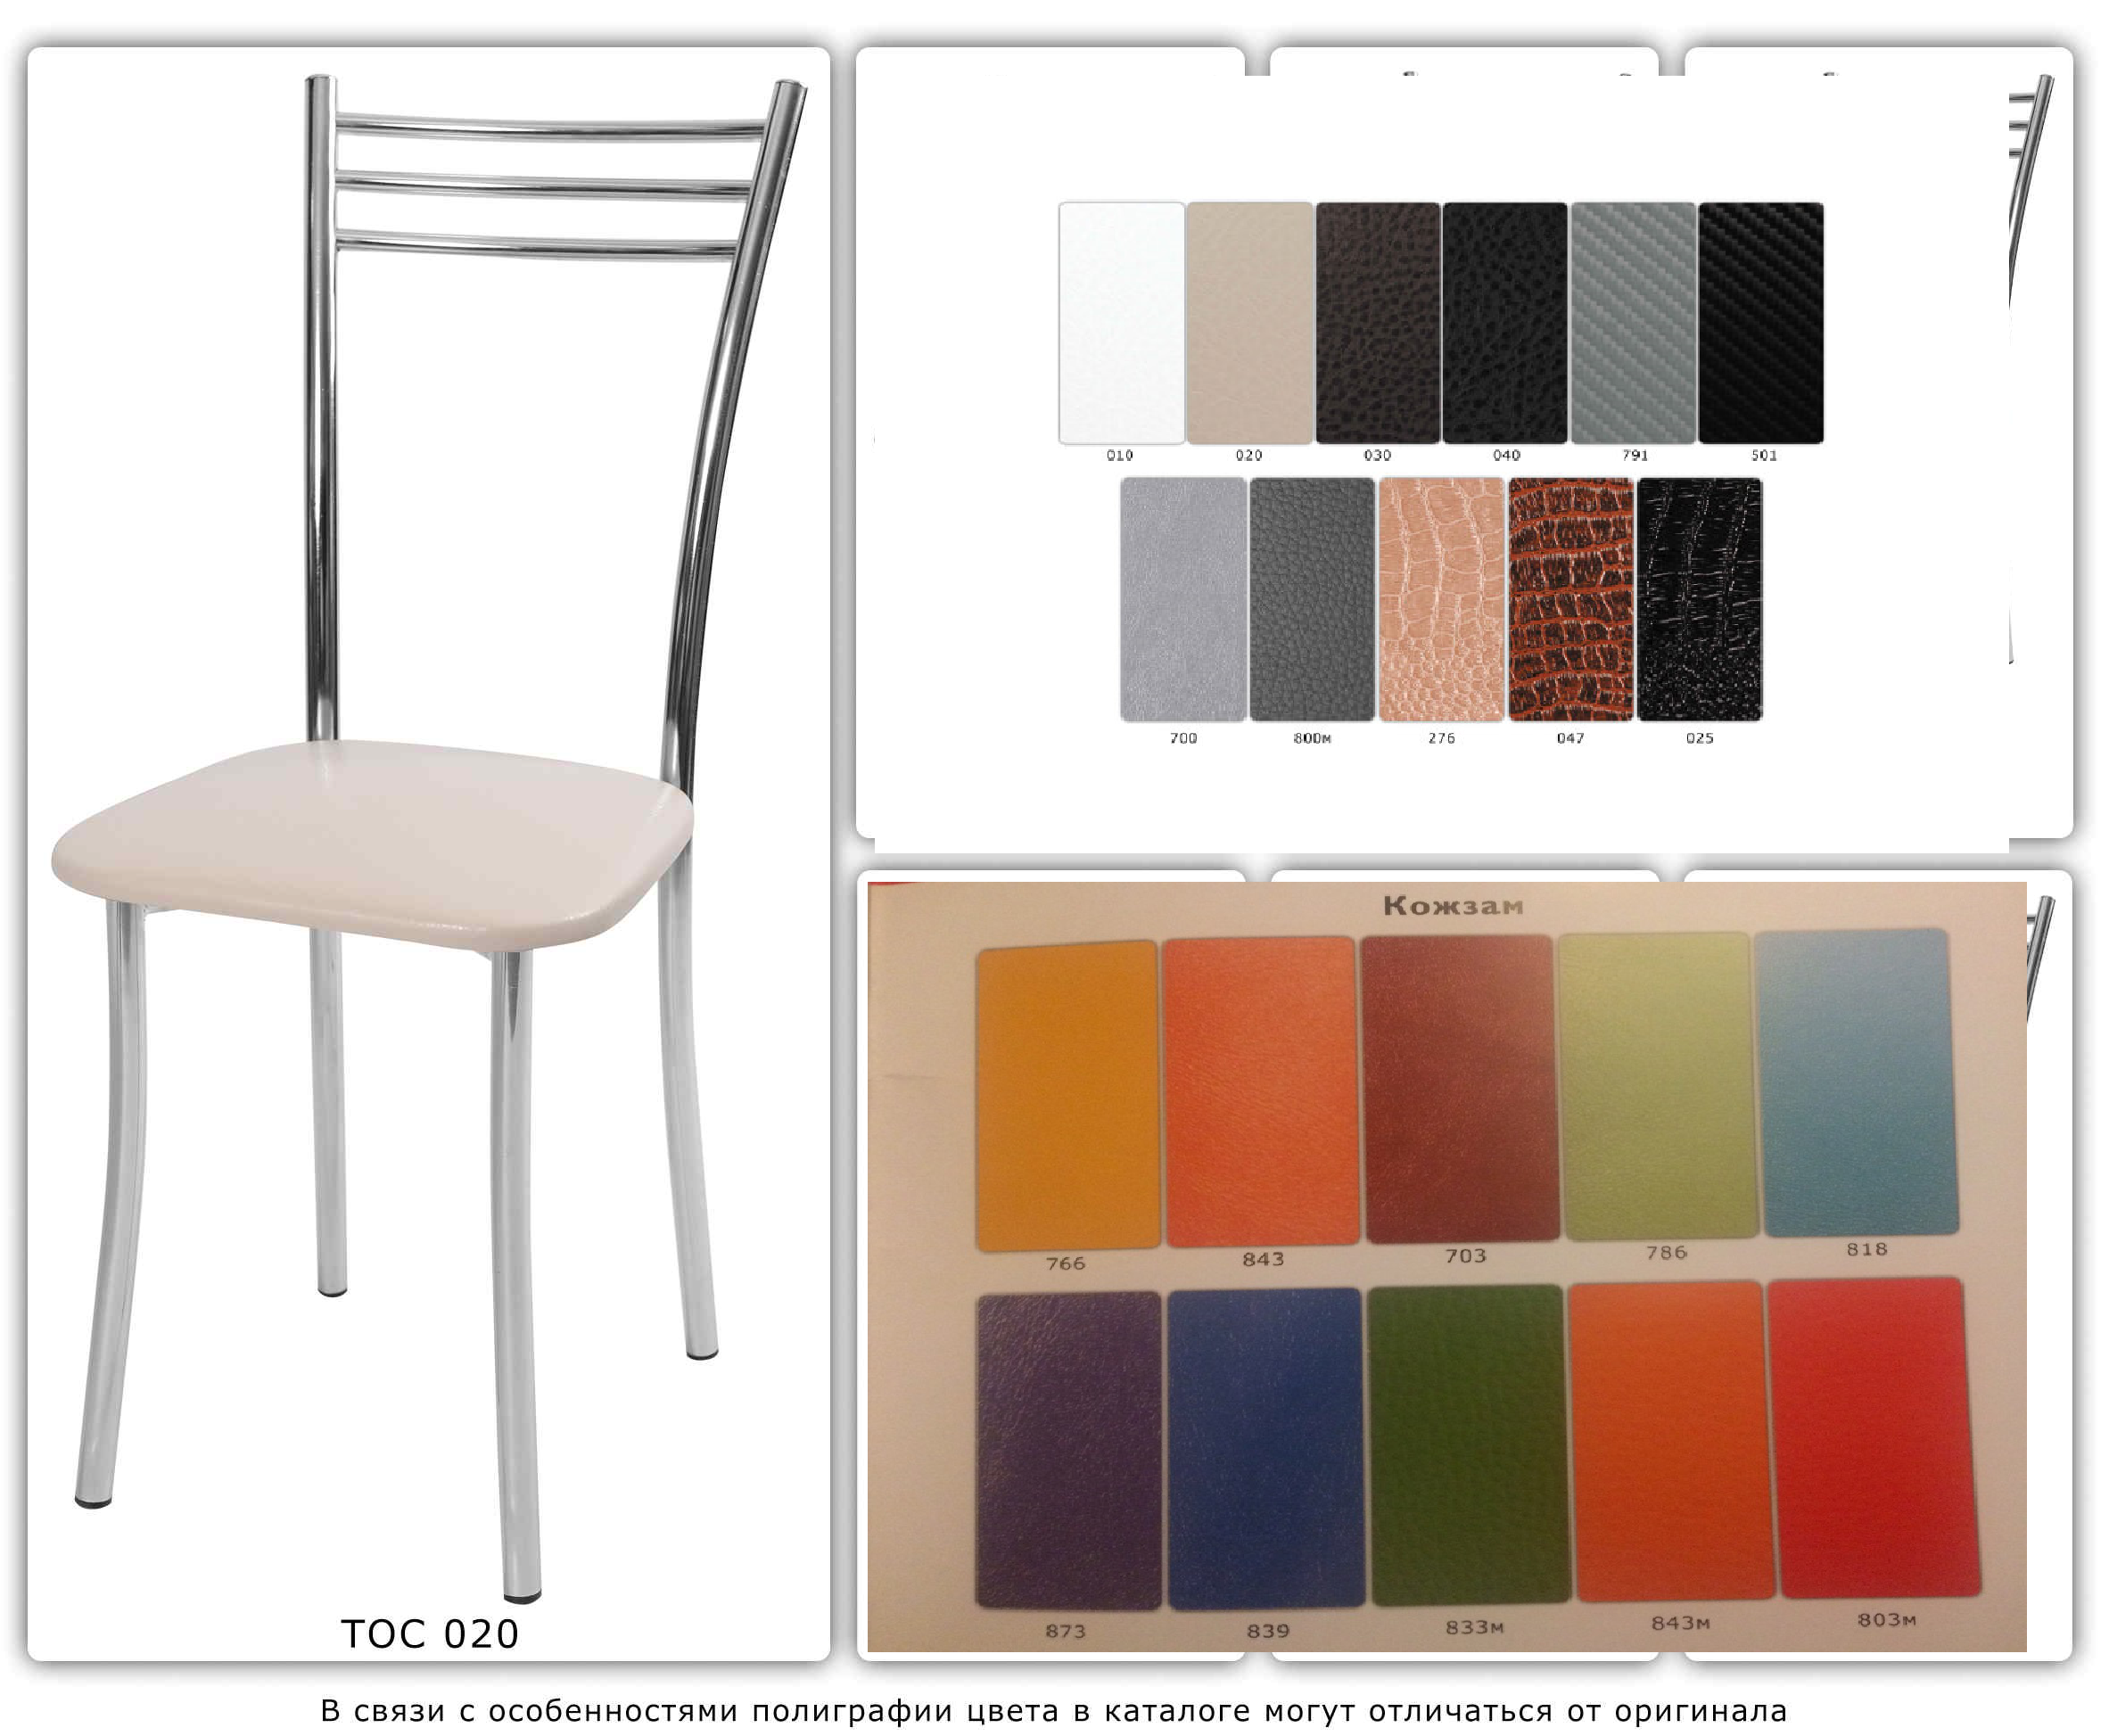 100 фото стильных стульев для кухни. красивые интерьеры и дизайн